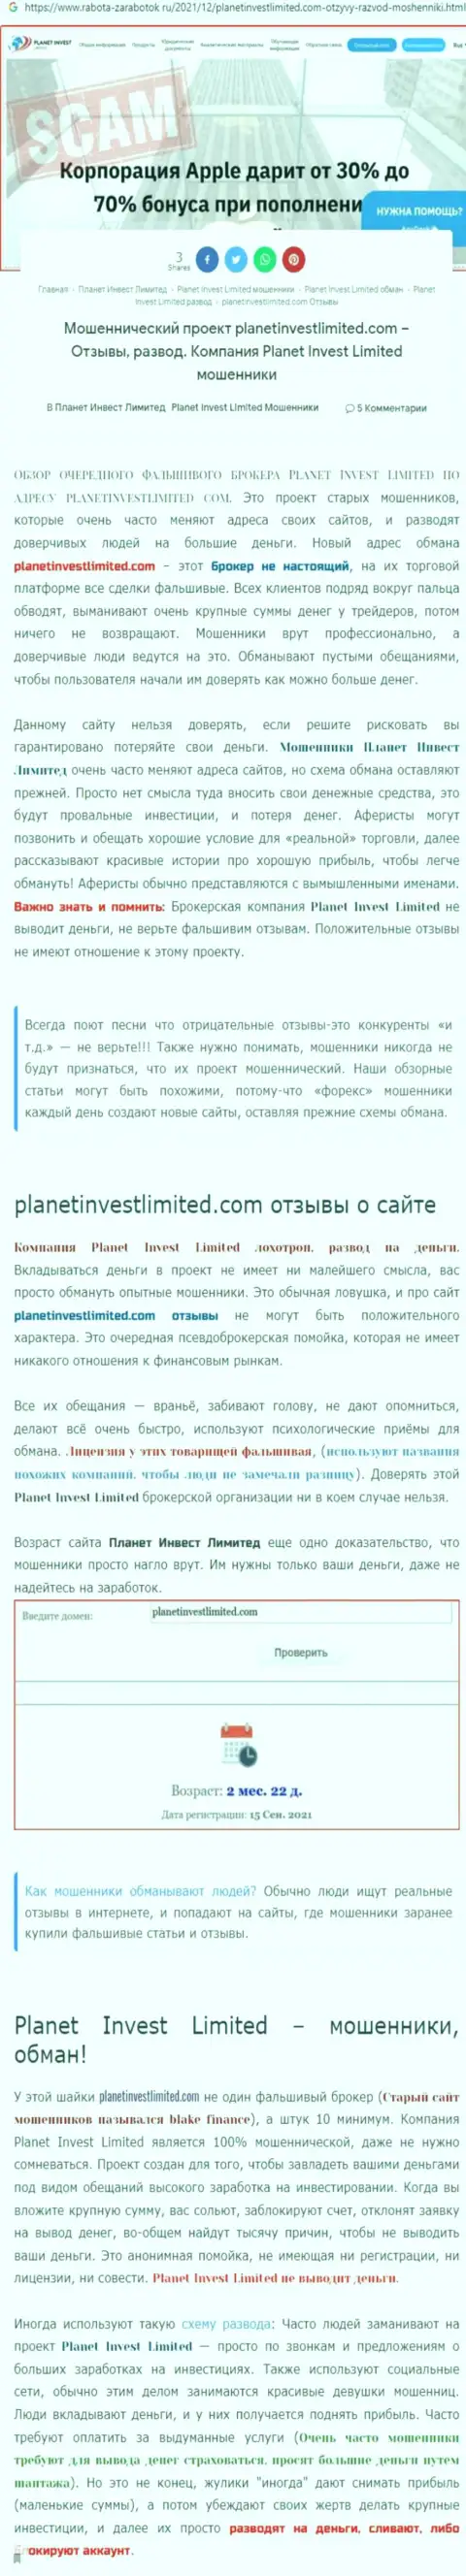 Не опасно ли совместно работать с организацией Planet Invest Limited ? (Обзор мошеннических деяний организации)